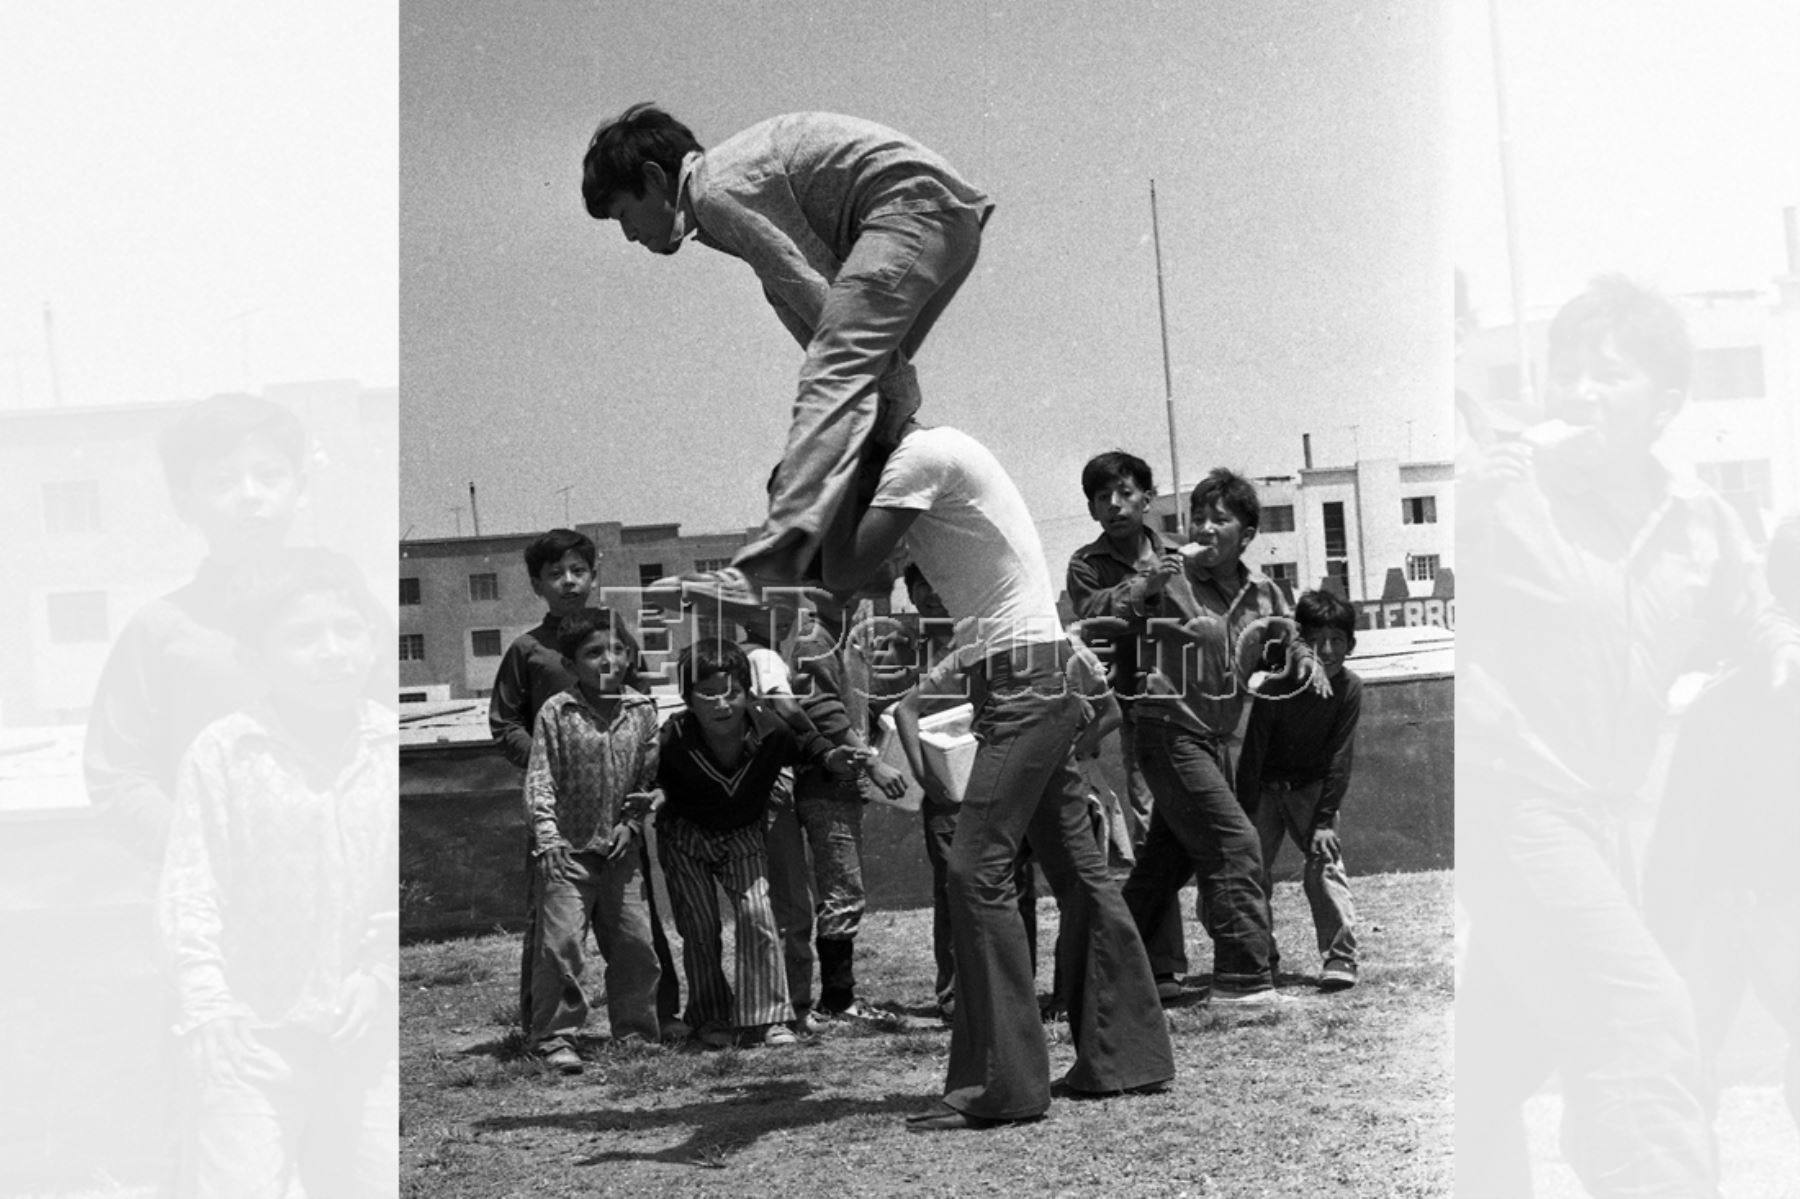 Un salto alto de lingo (1974).
Foto:Archivo Histórico El Peruano